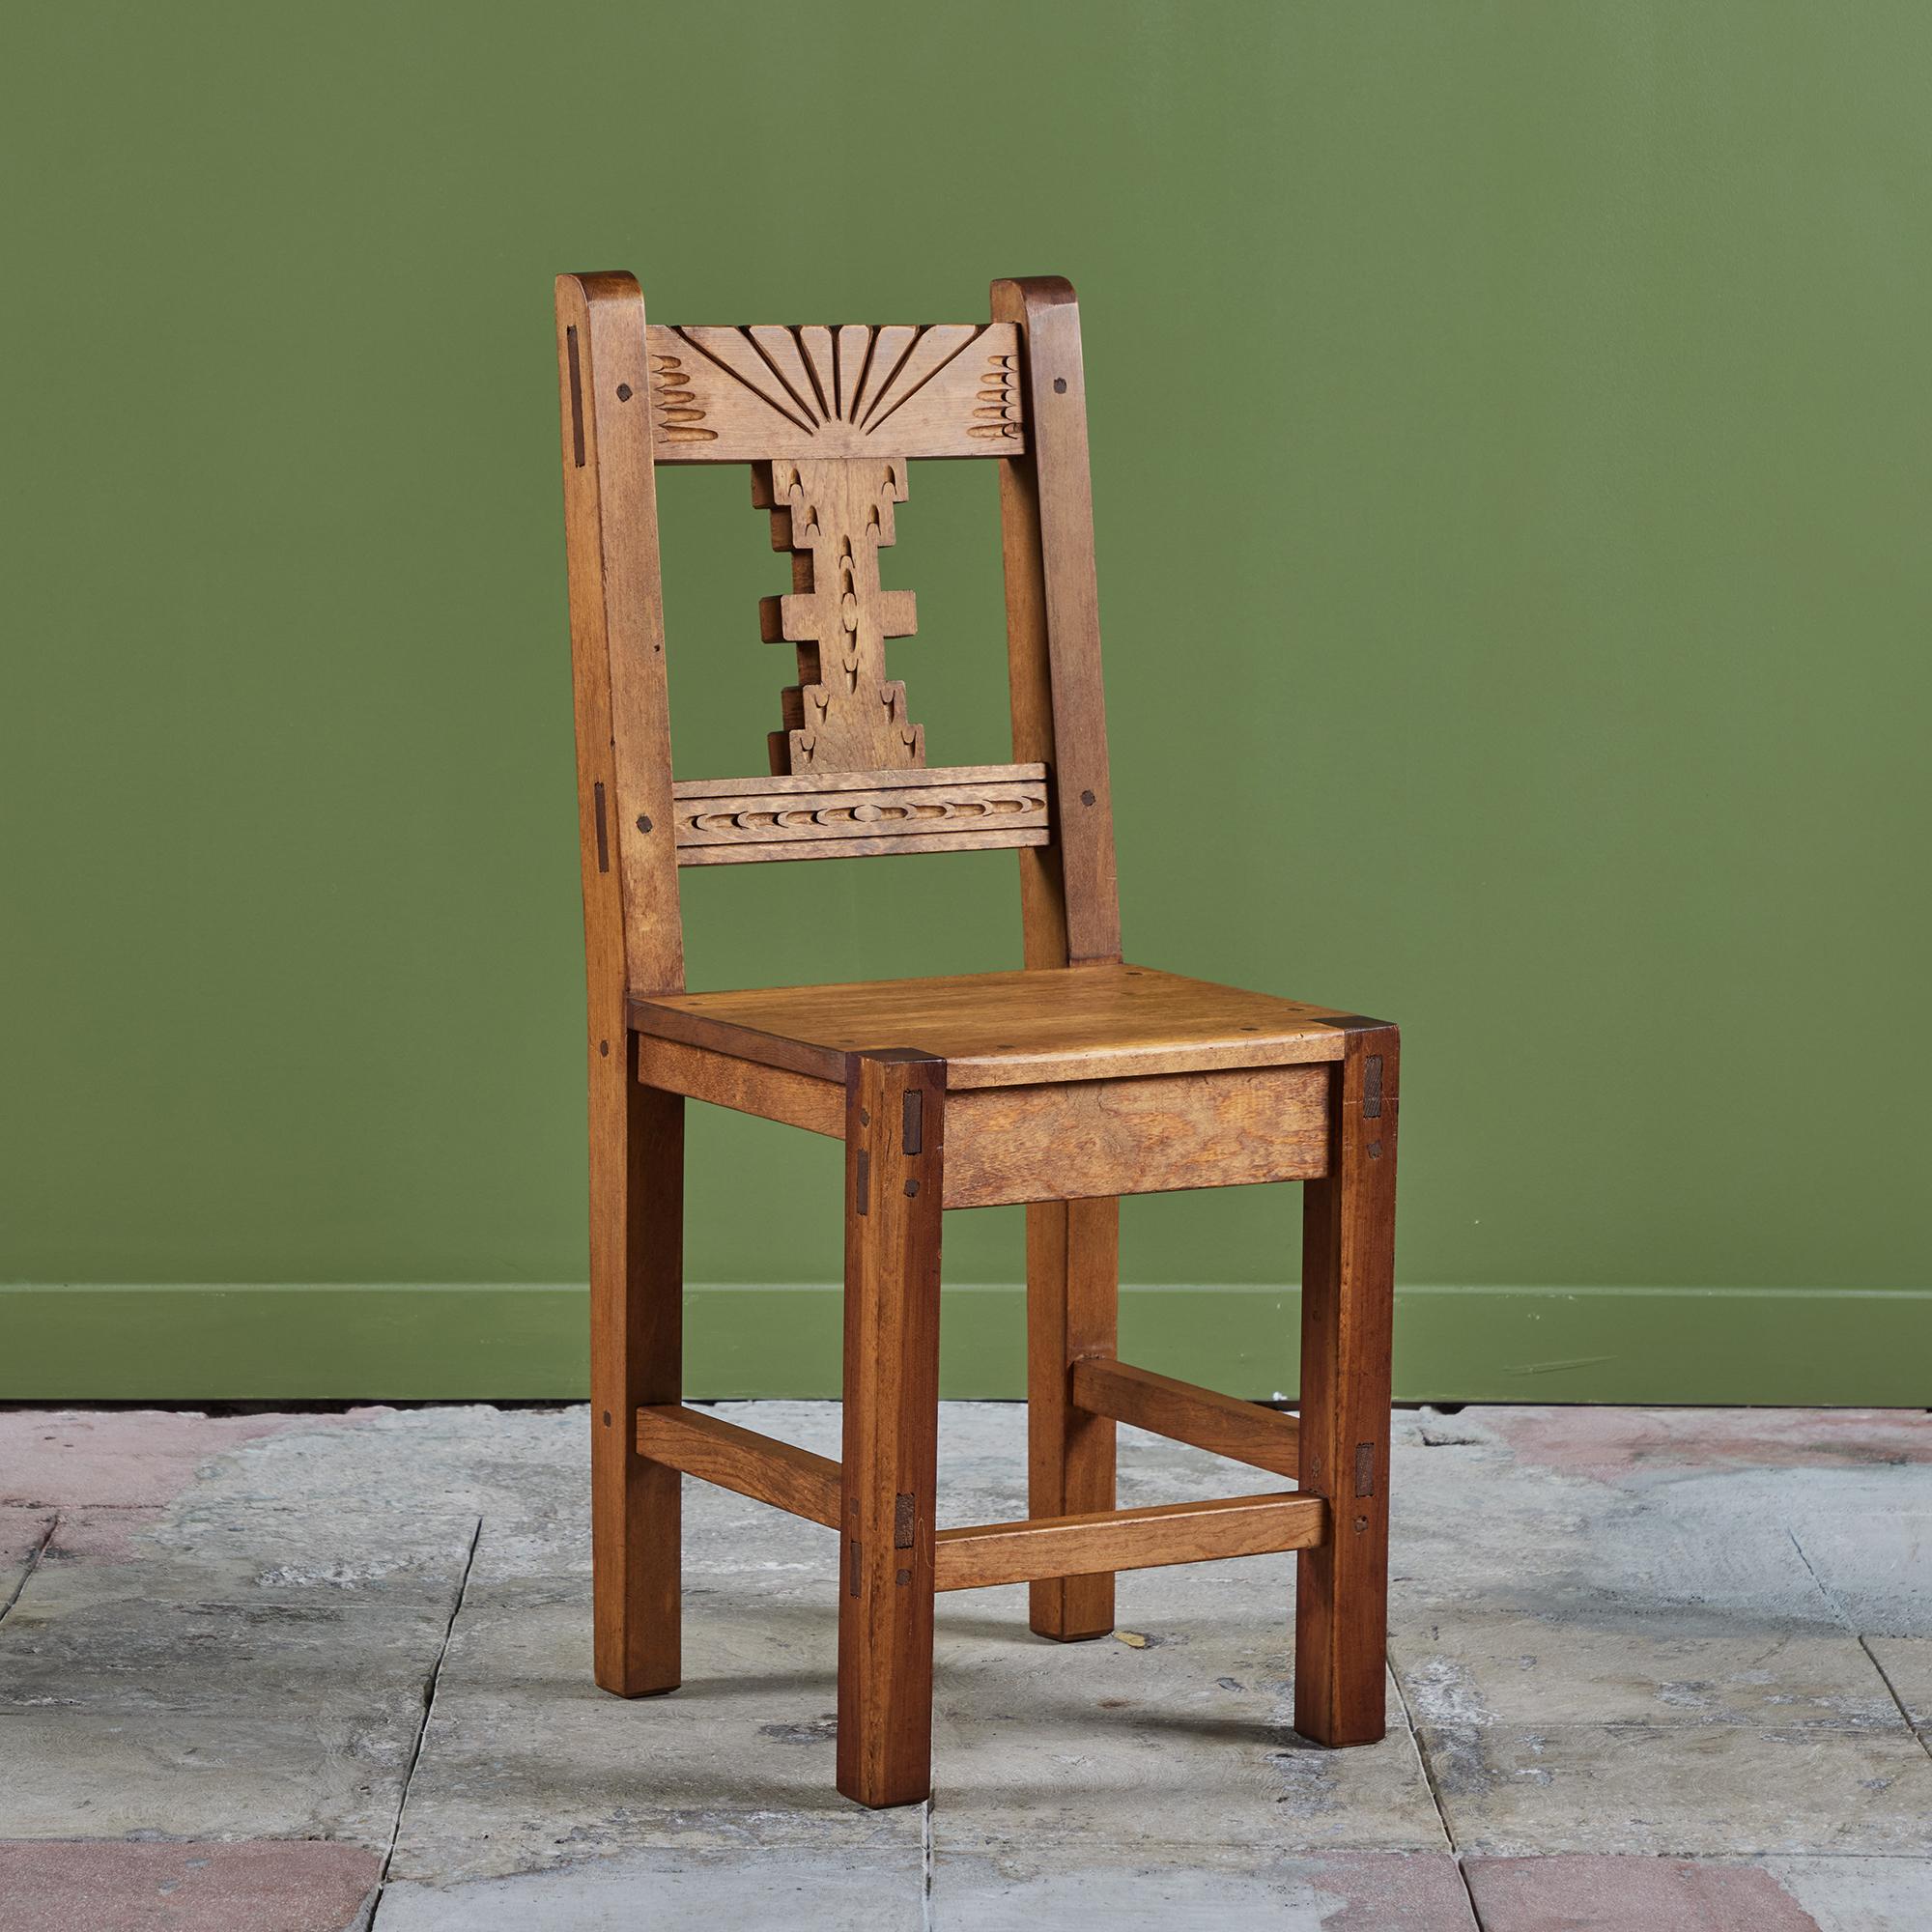 Handgeschnitzter moderner mexikanischer Beistellstuhl. Der Stuhl hat ein Gestell aus Mahagoni mit einer geschnitzten Verzierung entlang der Vorderseite der Rückenlehne. Perfekt als Akzentstuhl, Schreibtischstuhl oder als Esszimmerstuhl! Wir haben